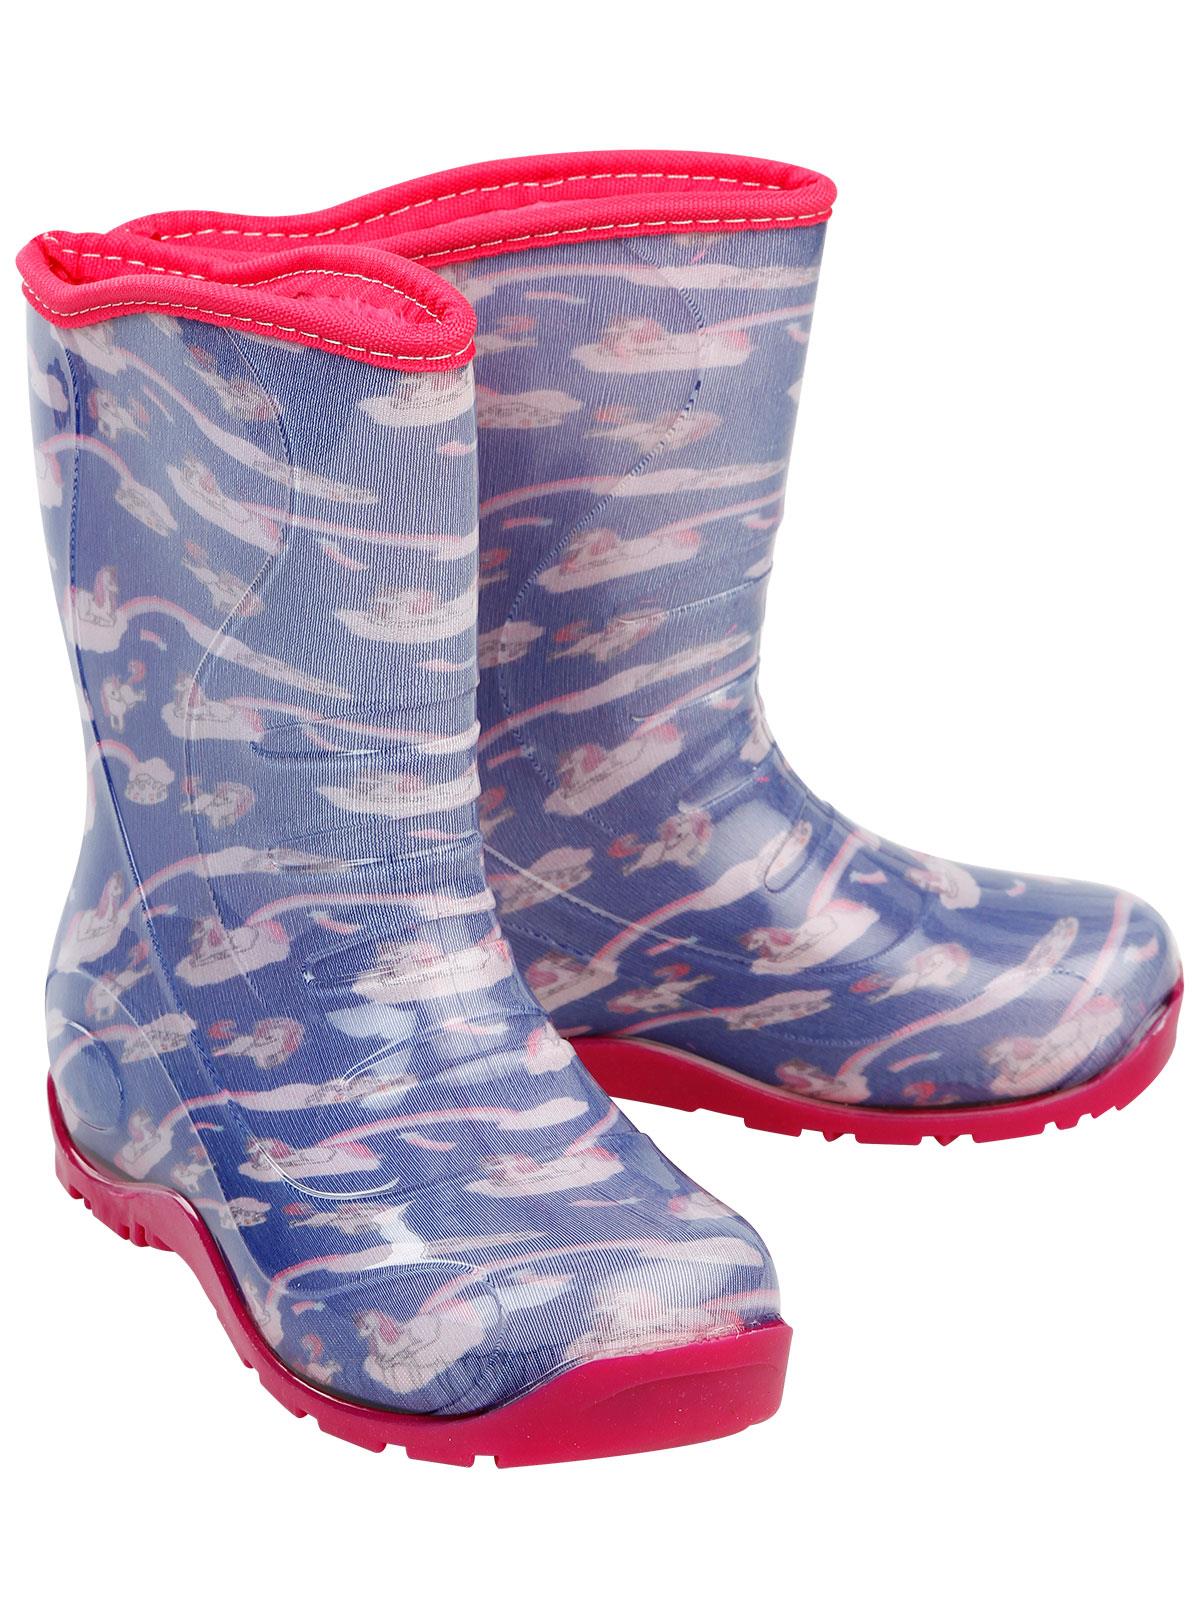 Boots Kız Çocuk Kedi Baskılı Yağmur Çizmesi 30-34 Numara Mor